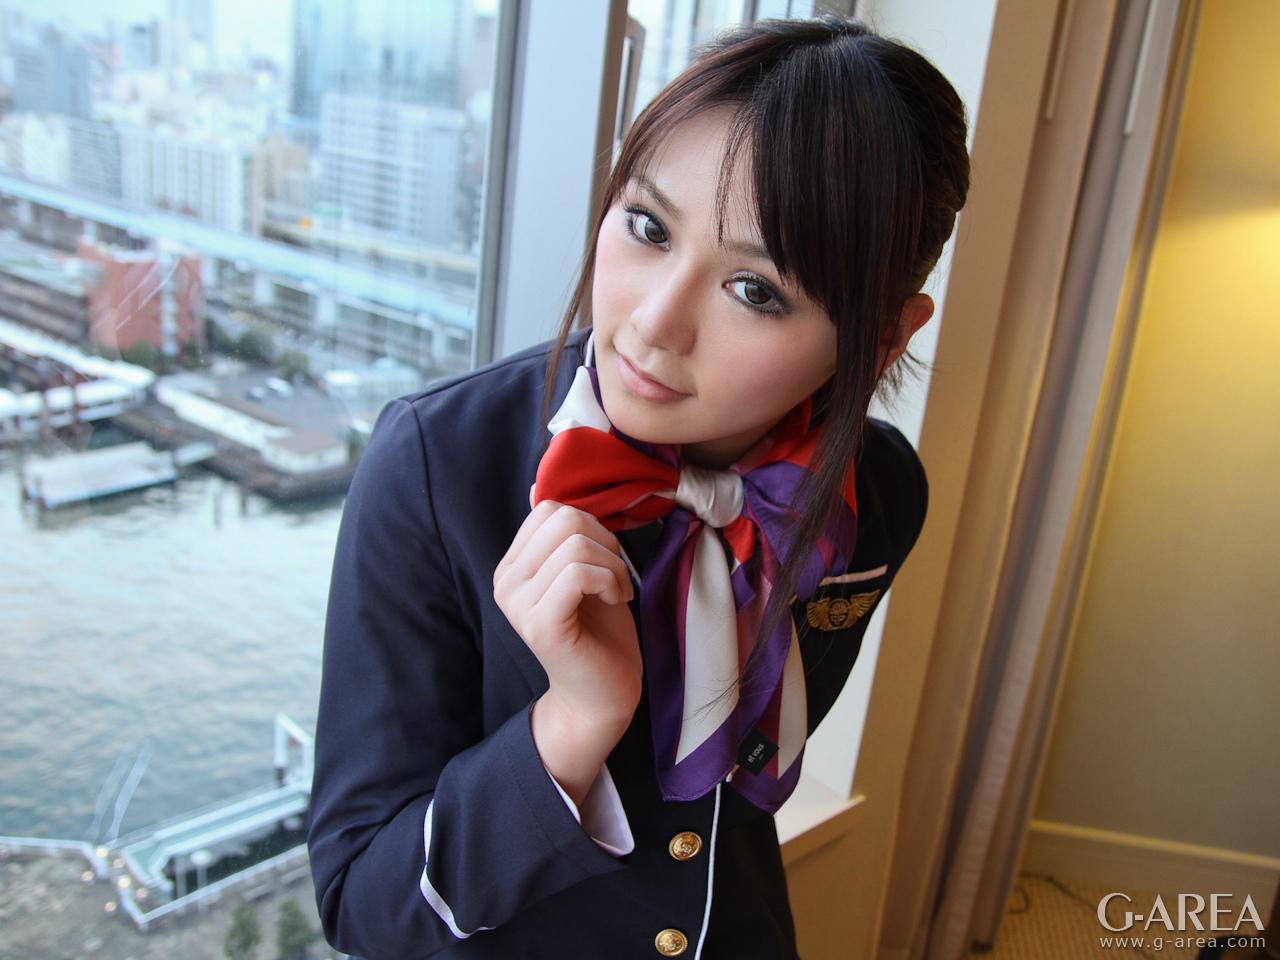 GAREA-750YORIKO एक रूढ़िवादी सुंदर लड़की का पेशेवर छात्र है जिसे cosplay पसंद है